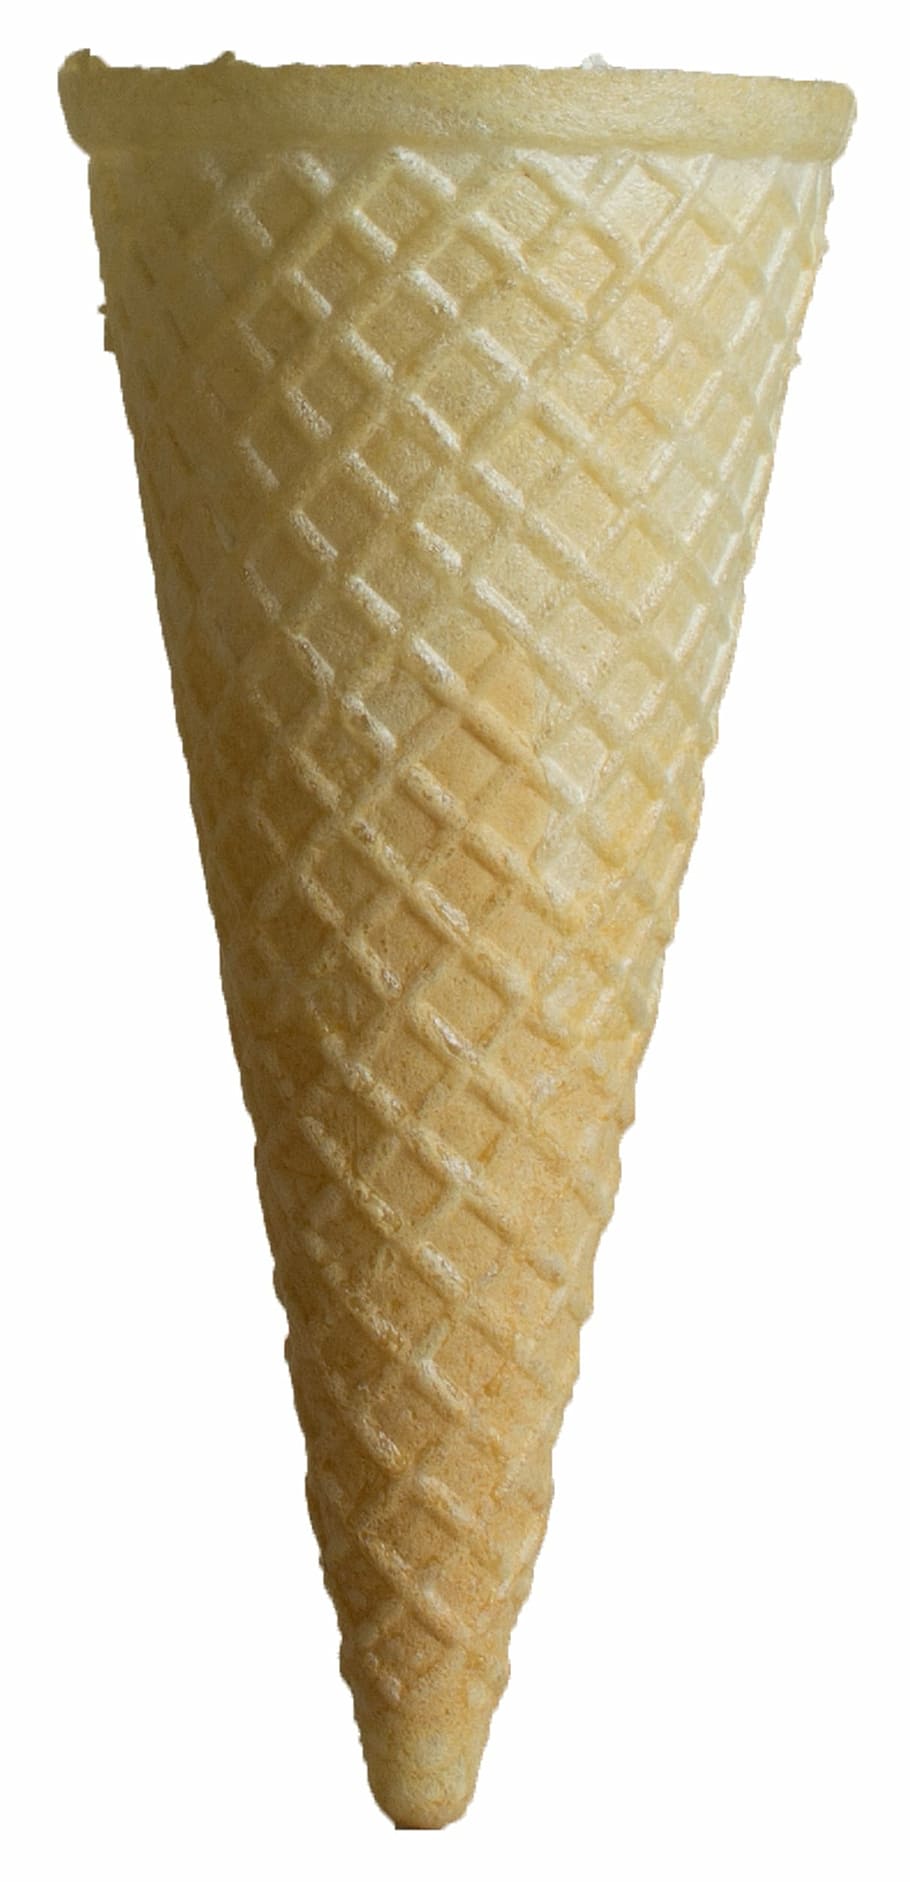 brown, ice cream cone, isolated, ice, cone, cream, crispy, empty, crunch, white background